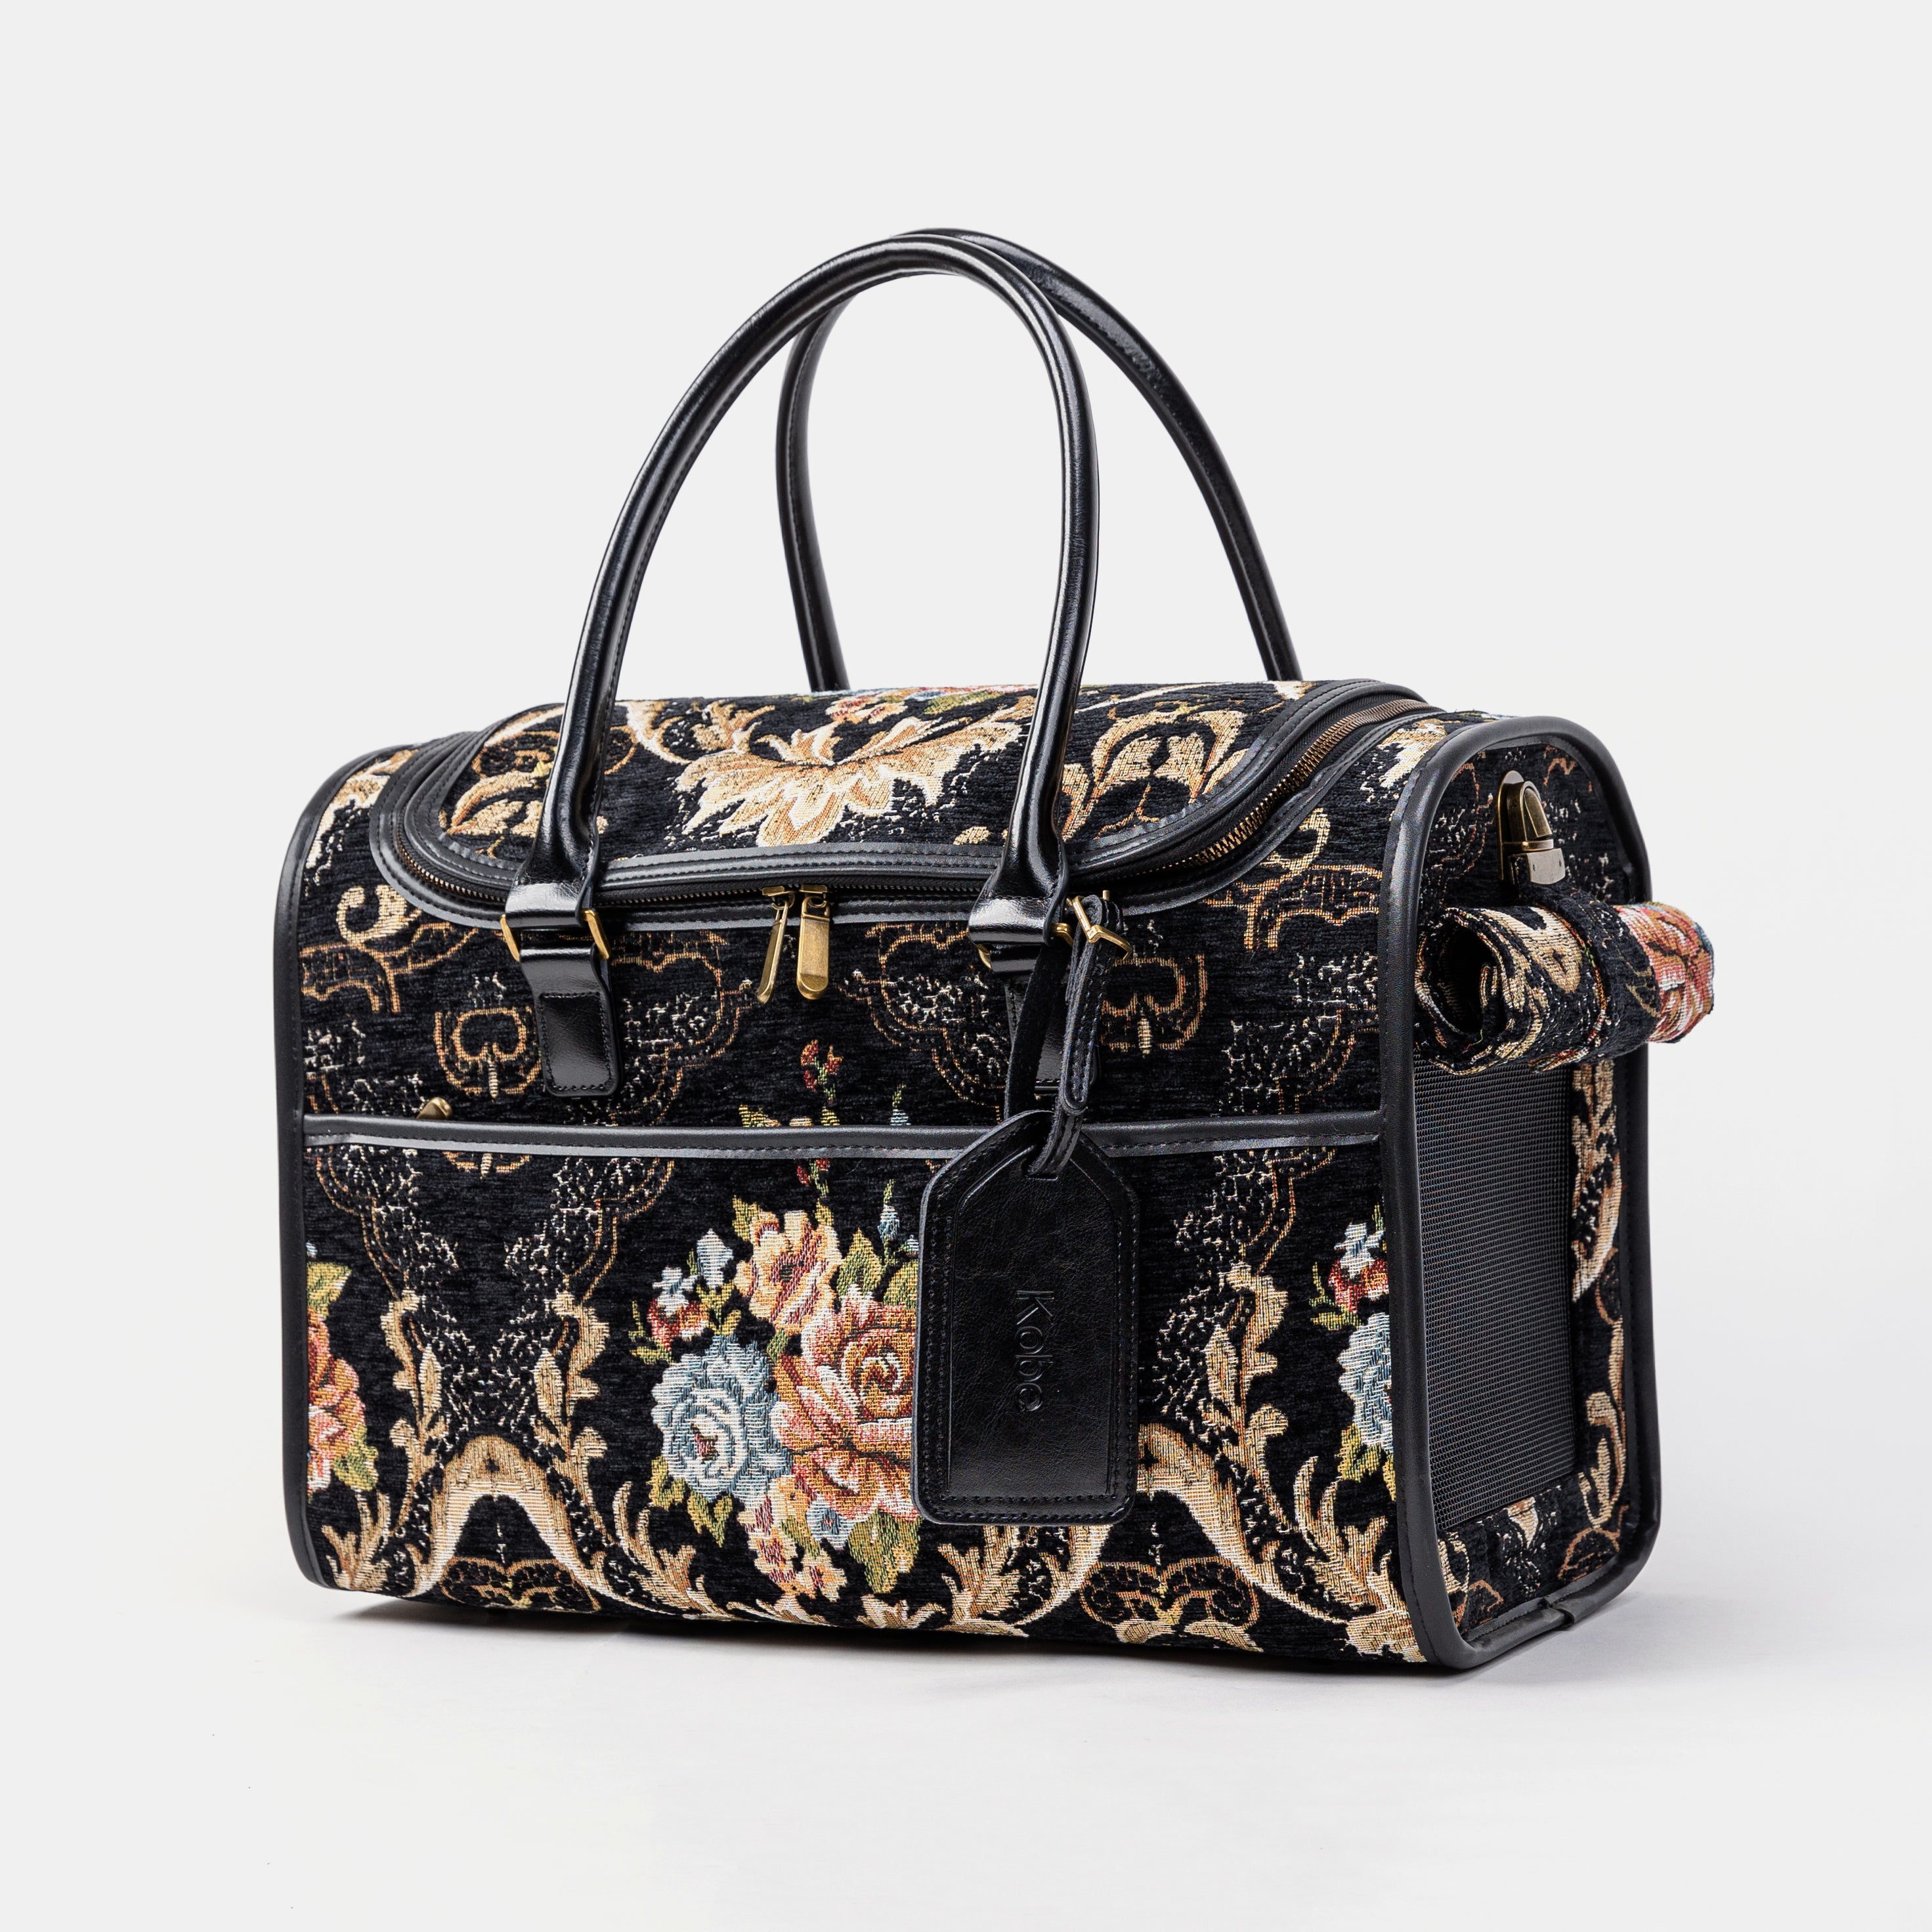 Travel Dog Carrier Bag Floral Black Main